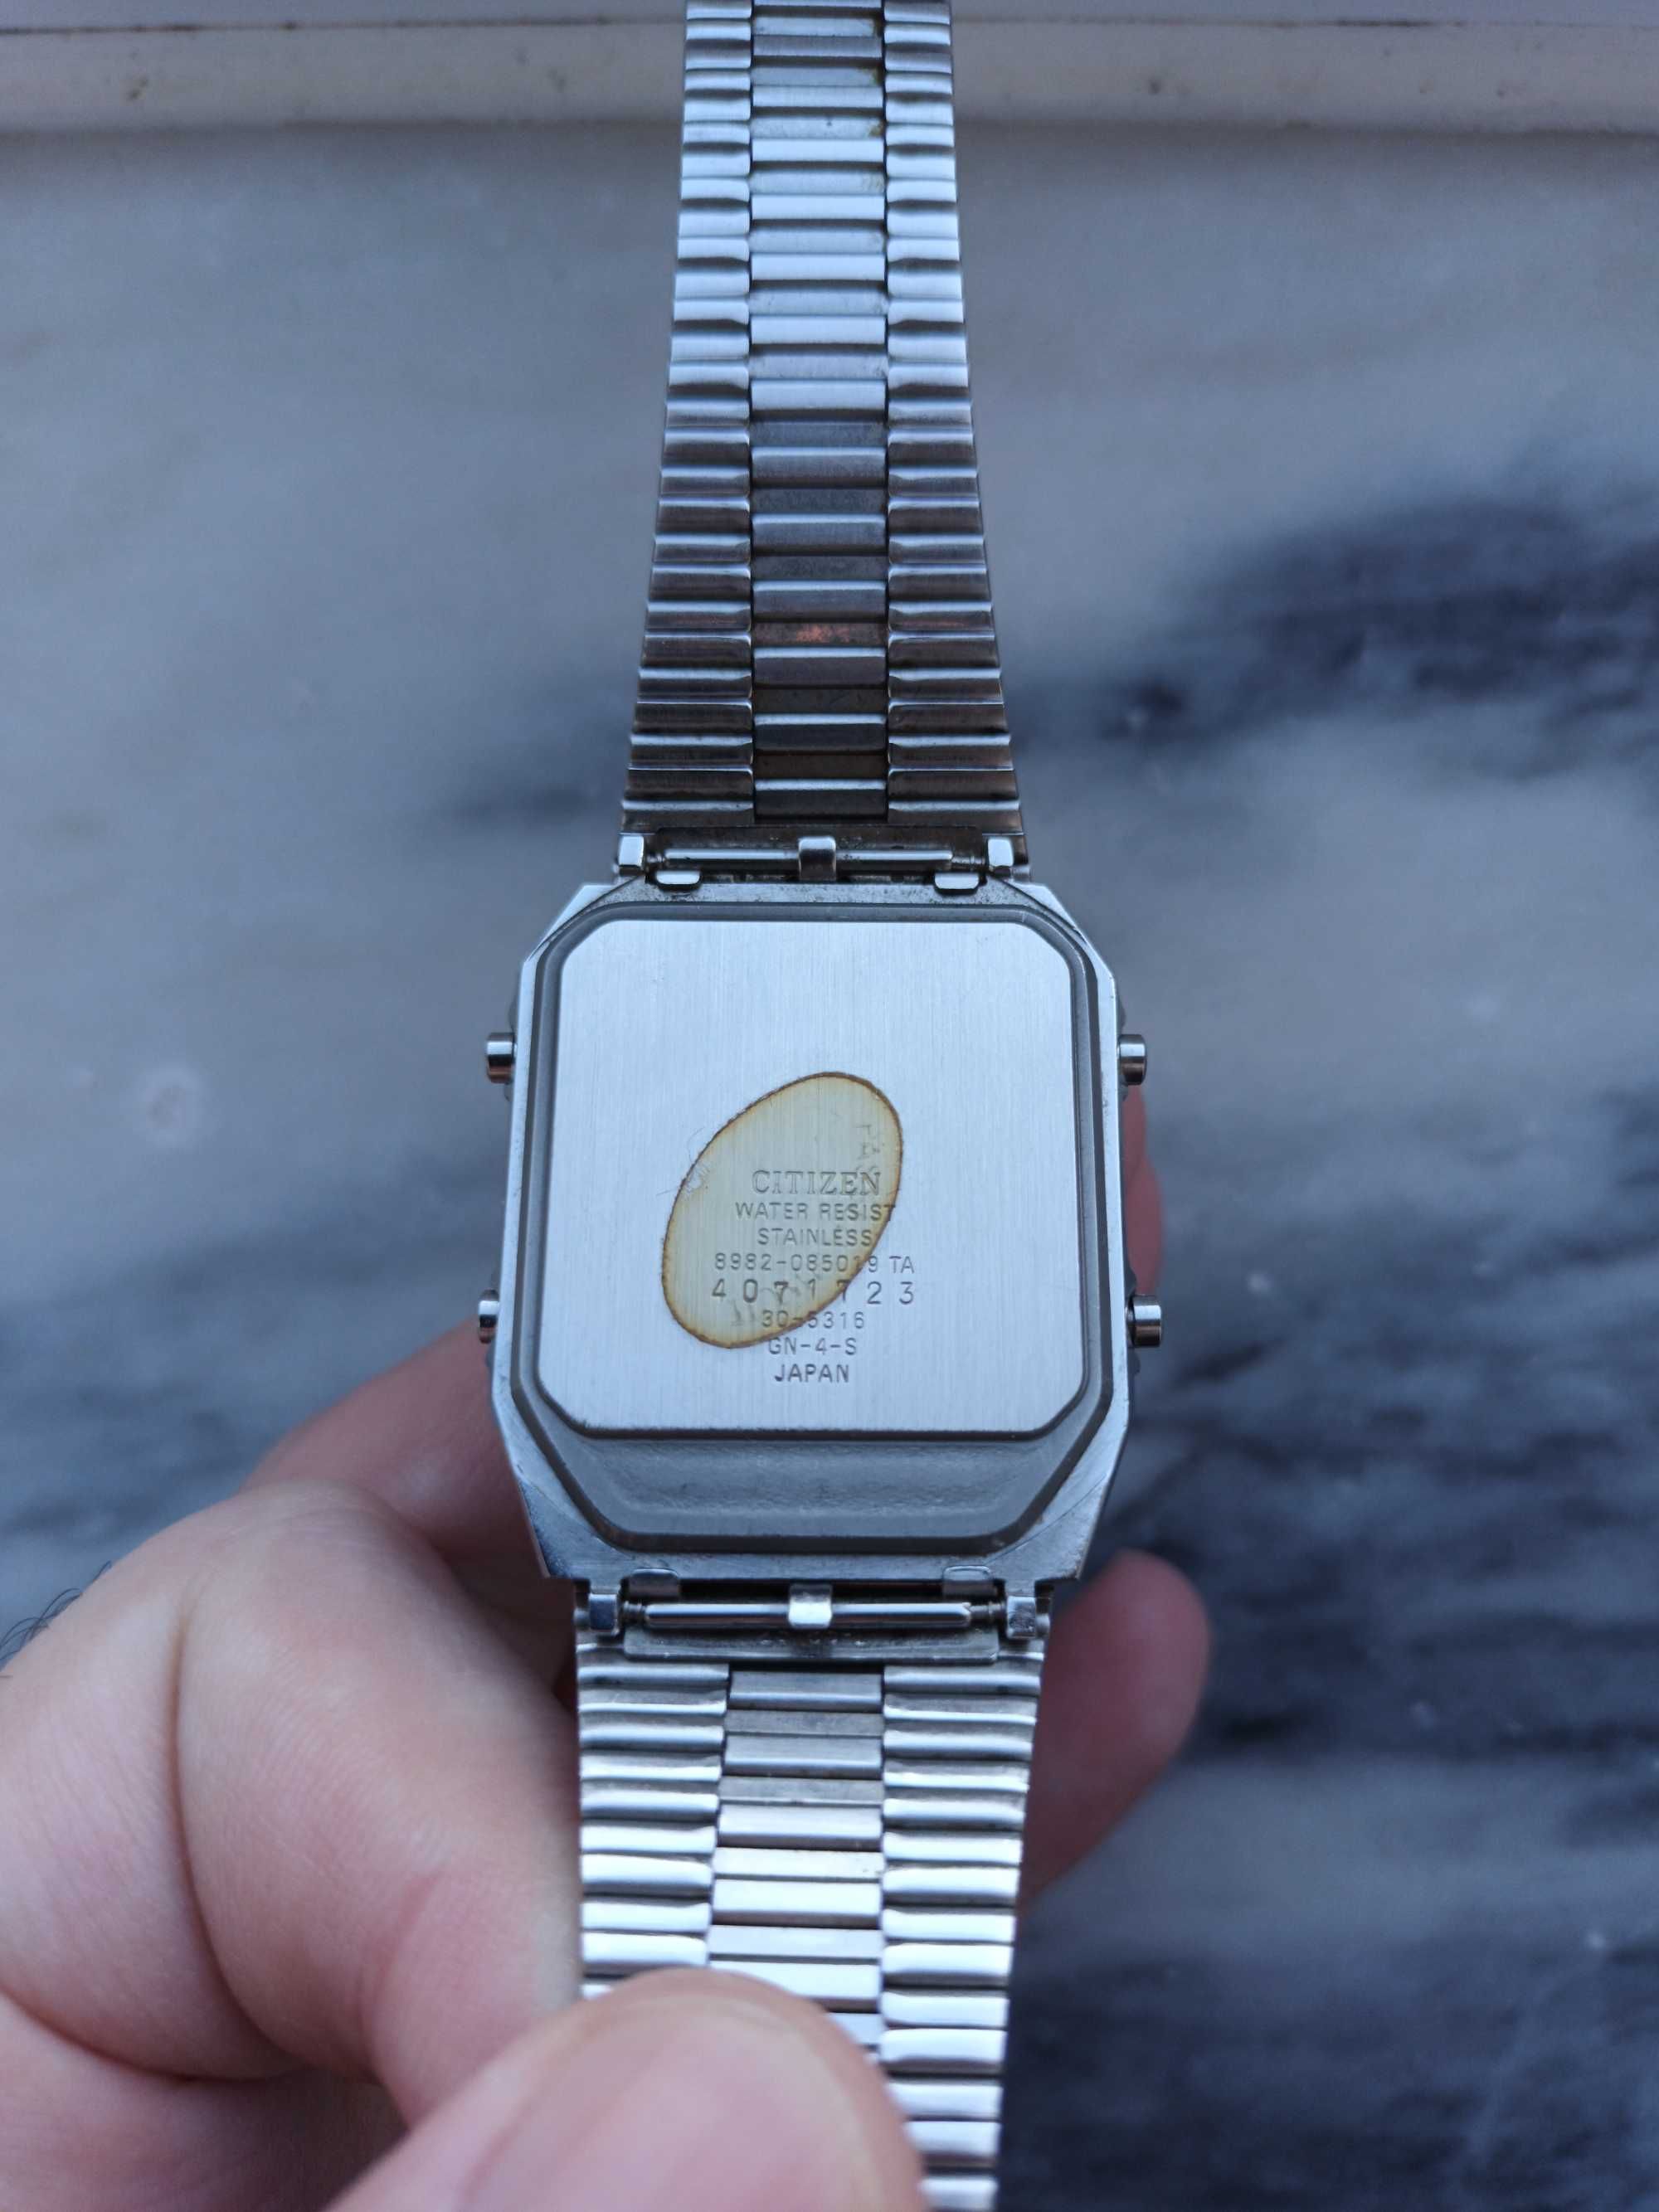 Relógio Citizen ANA-DIGI TEMP Vintage